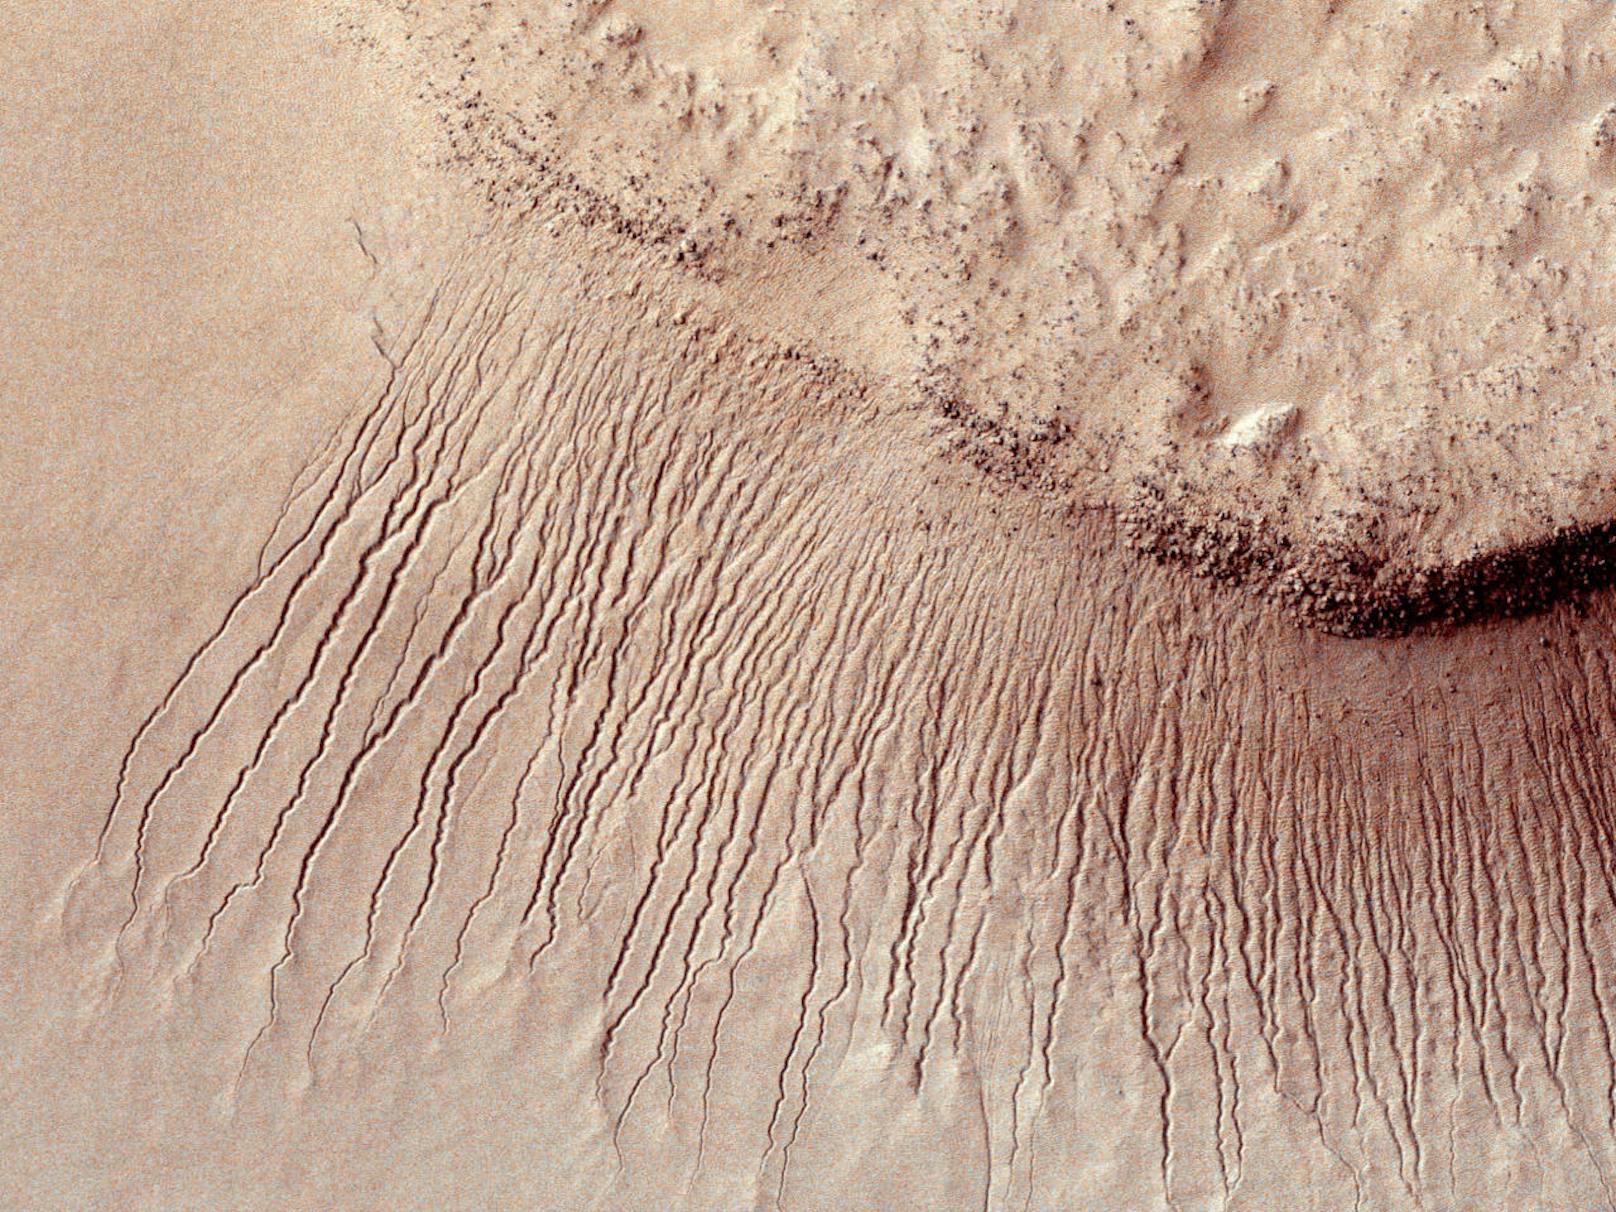 So sieht es auf der Oberfläche des Mars laut Aufnahmen der Nasa aus.